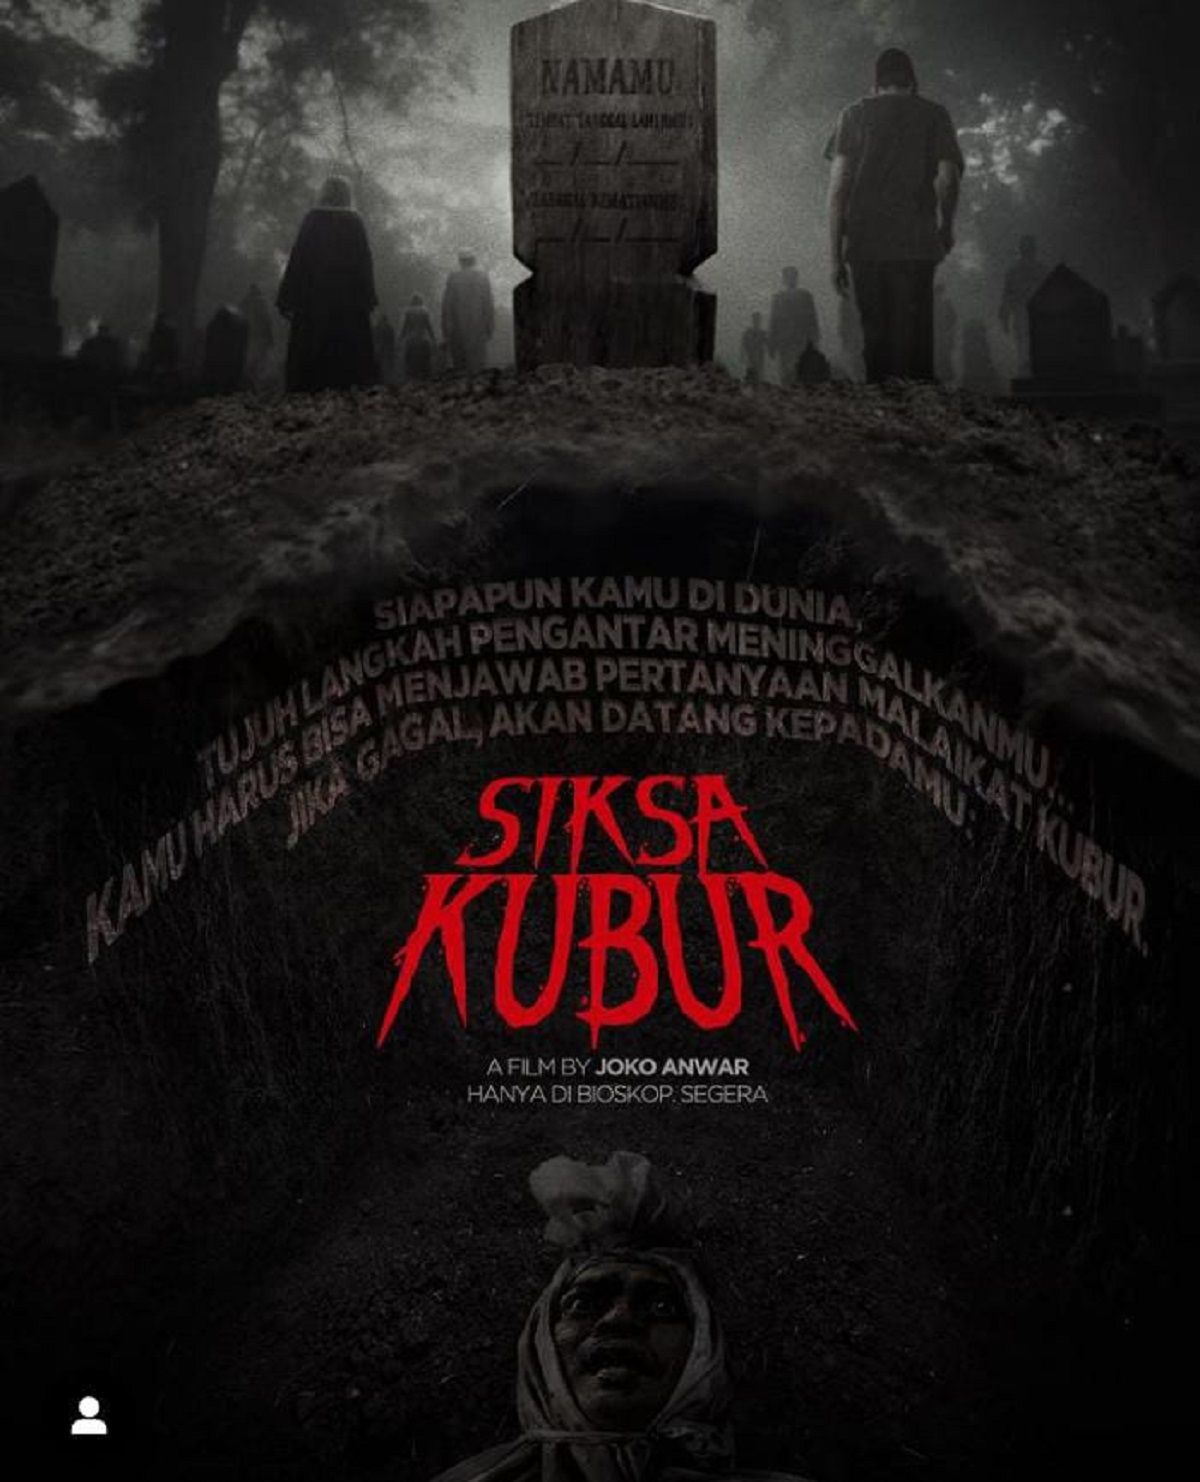 Sinopsis Siksa Kubur, Film Terbaru Joko Anwar, Cerita dari Kuburan Soal Perspektif Agama Islam